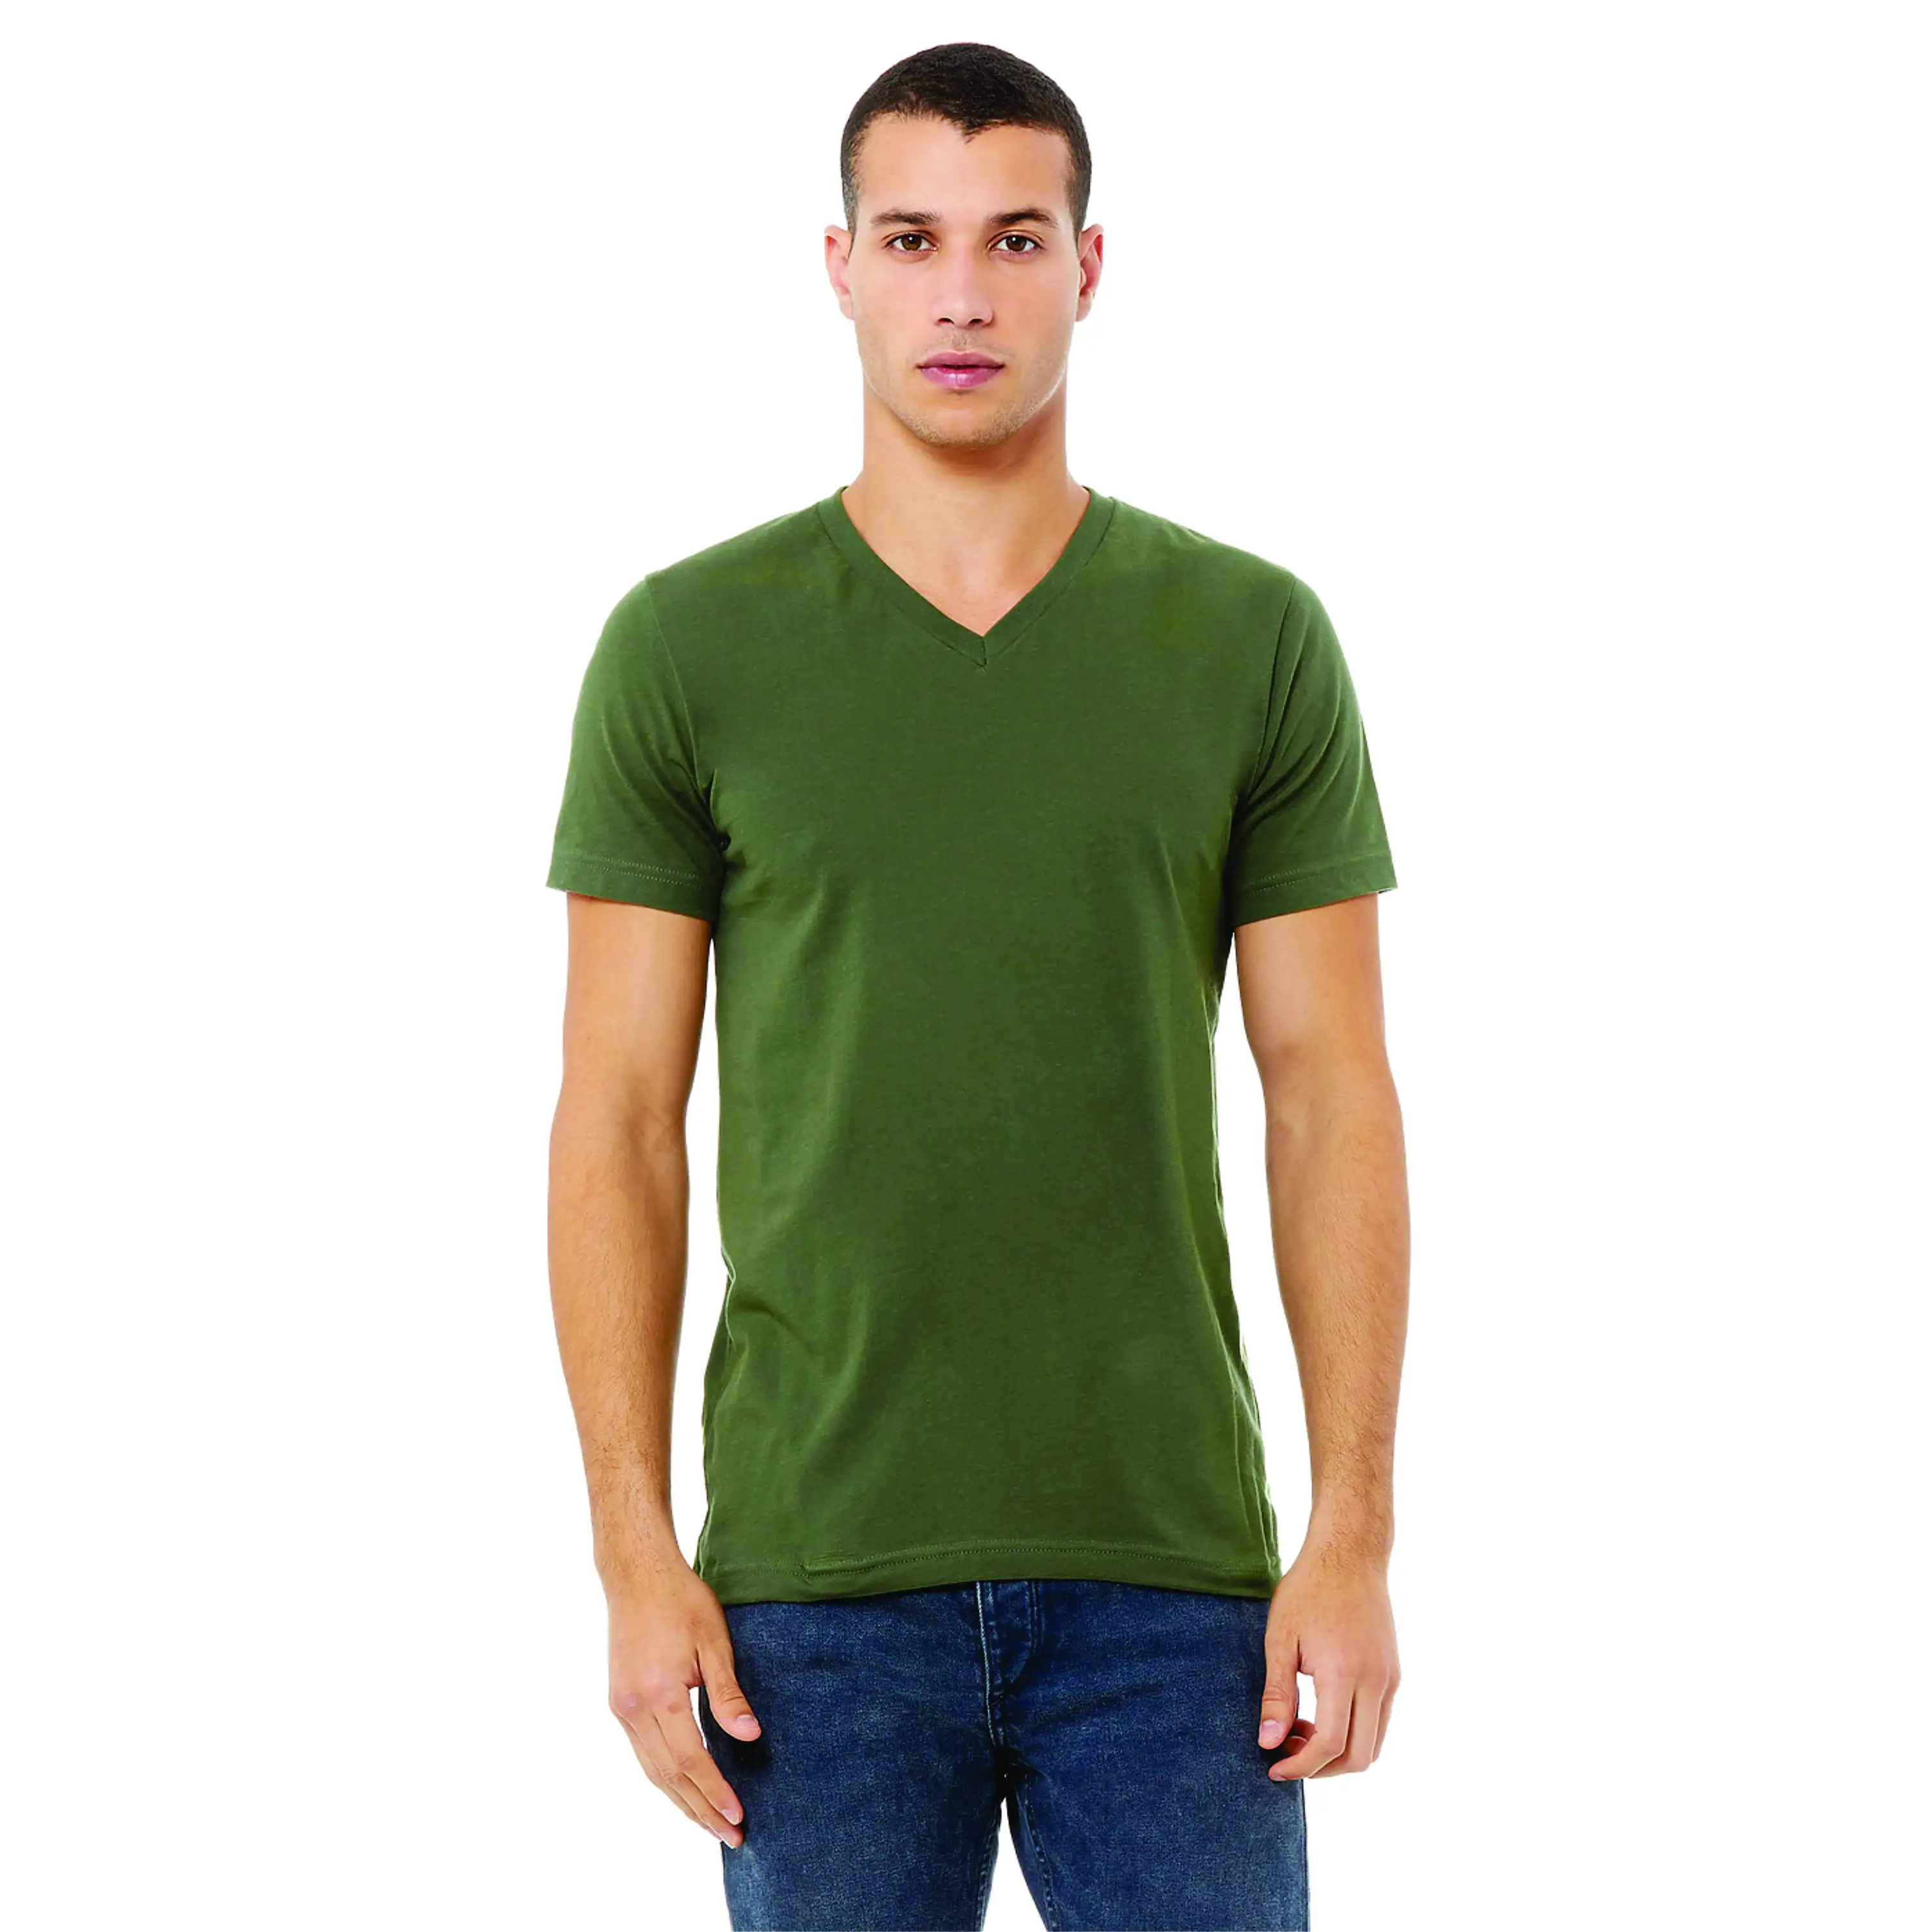 100% Airlume कंघी और अंगूठी काता कपास 32 एकल 4.2 oz सैन्य हरी आवश्यक यूनिसेक्स जर्सी लघु आस्तीन वि गर्दन टी शर्ट